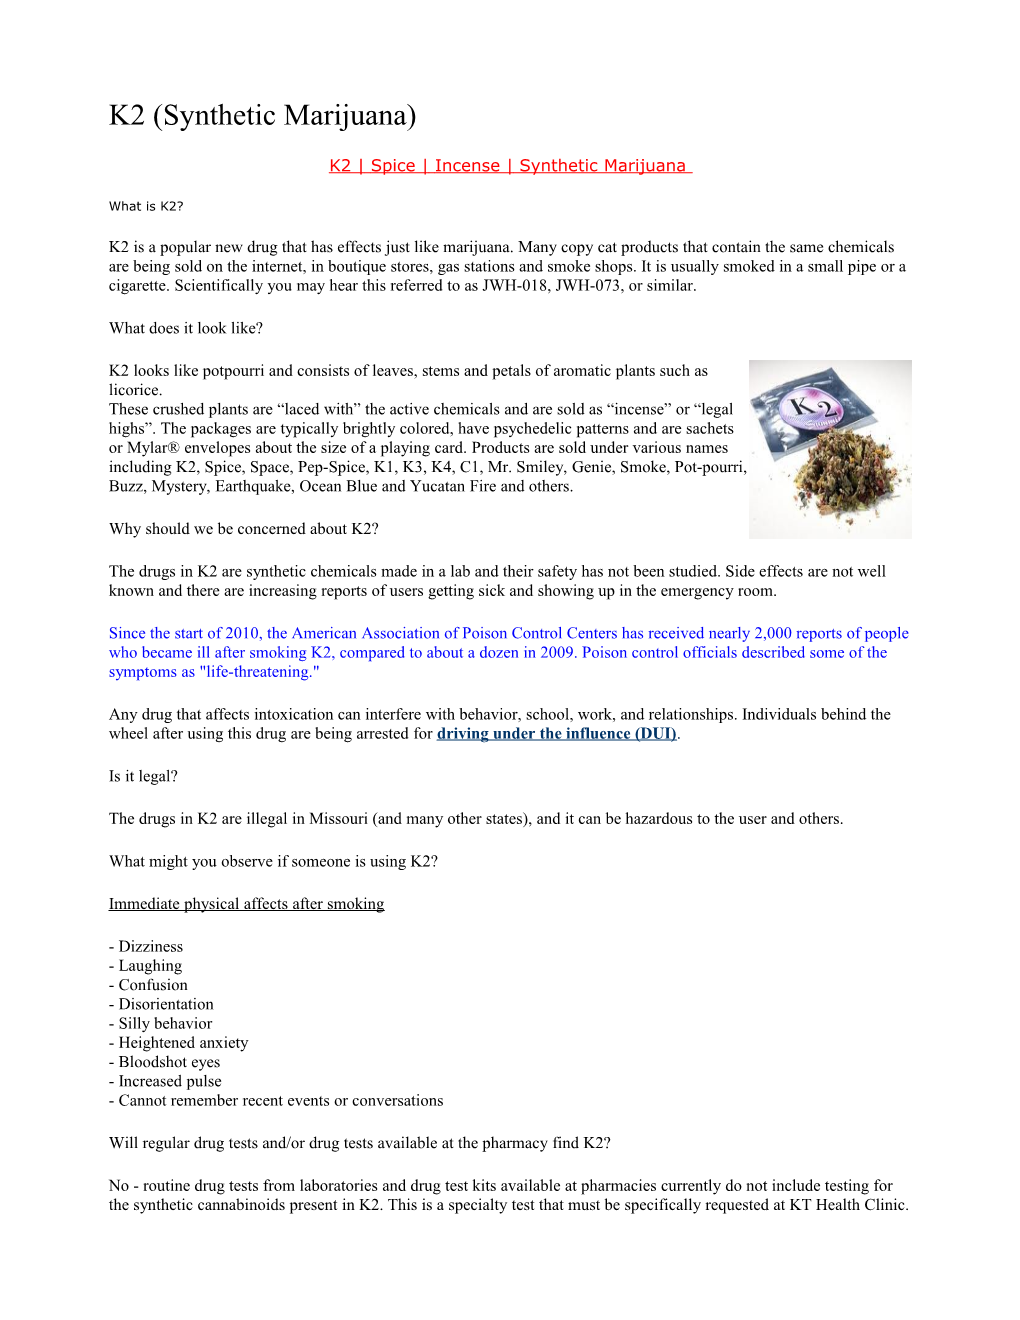 K2 Spice Incense Synthetic Marijuana